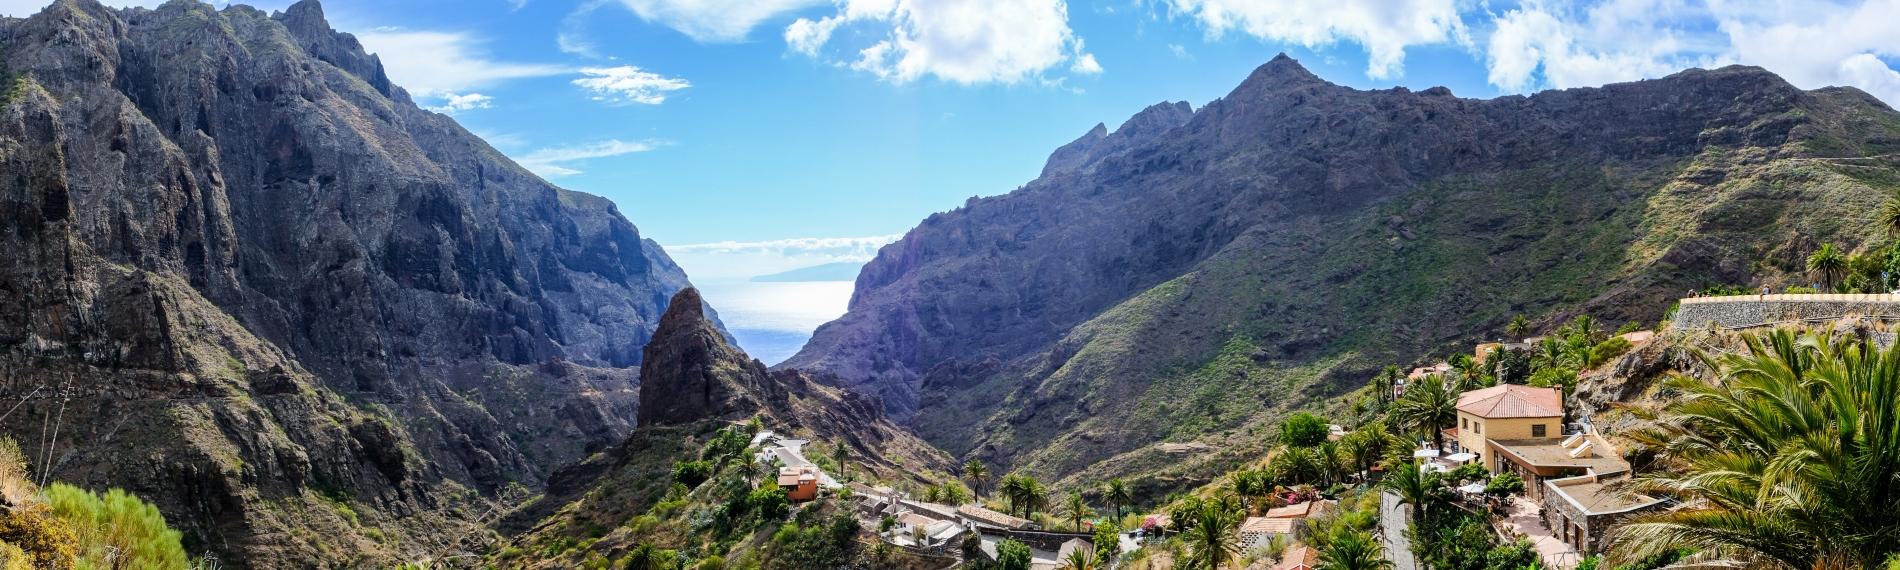 Masca Gorge in Tenerife 